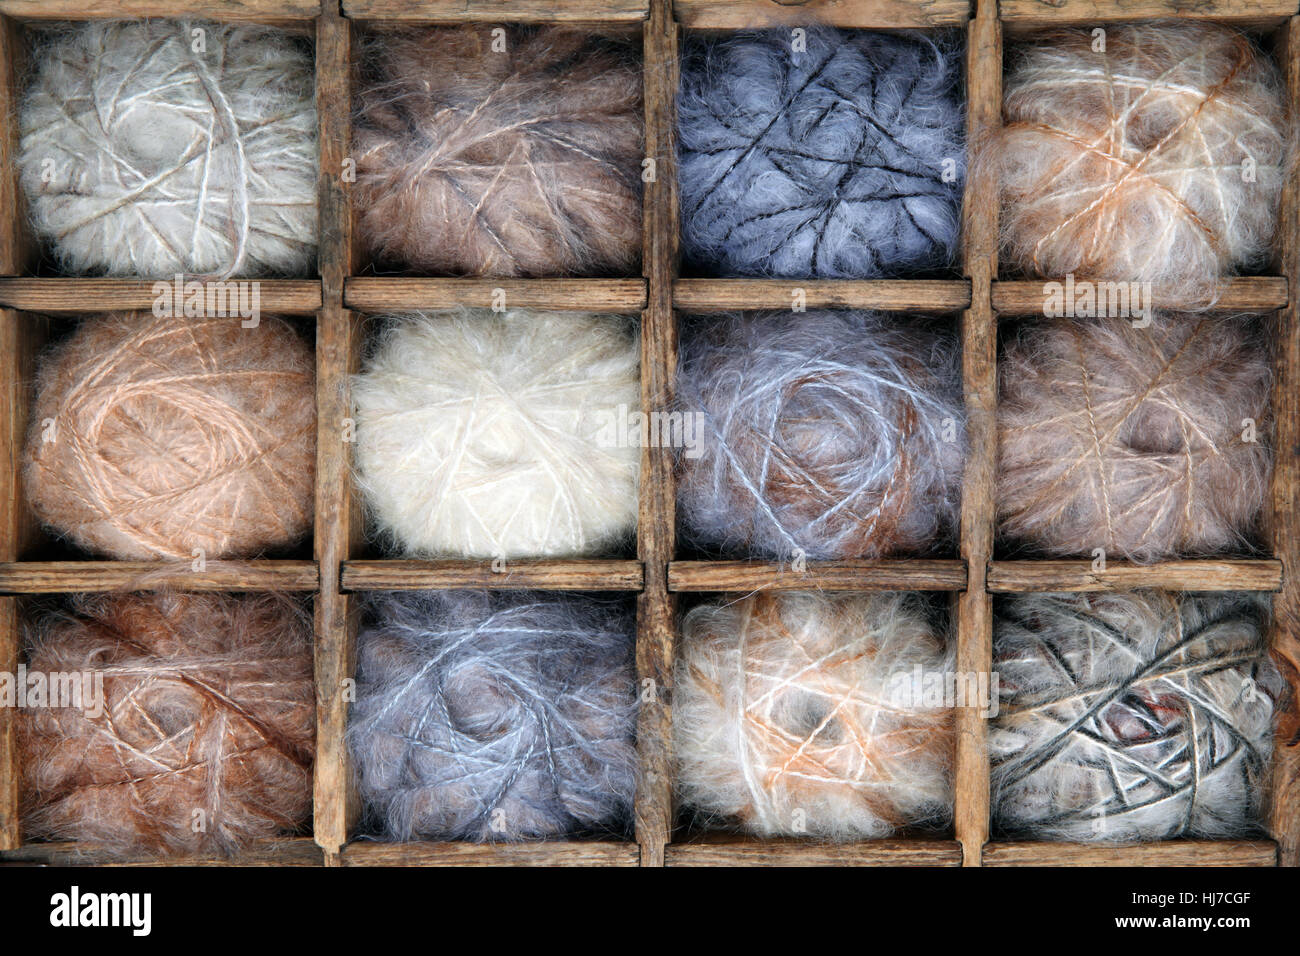 Imagen de la colorida colección de hilados de lana y mohair. Foto de stock